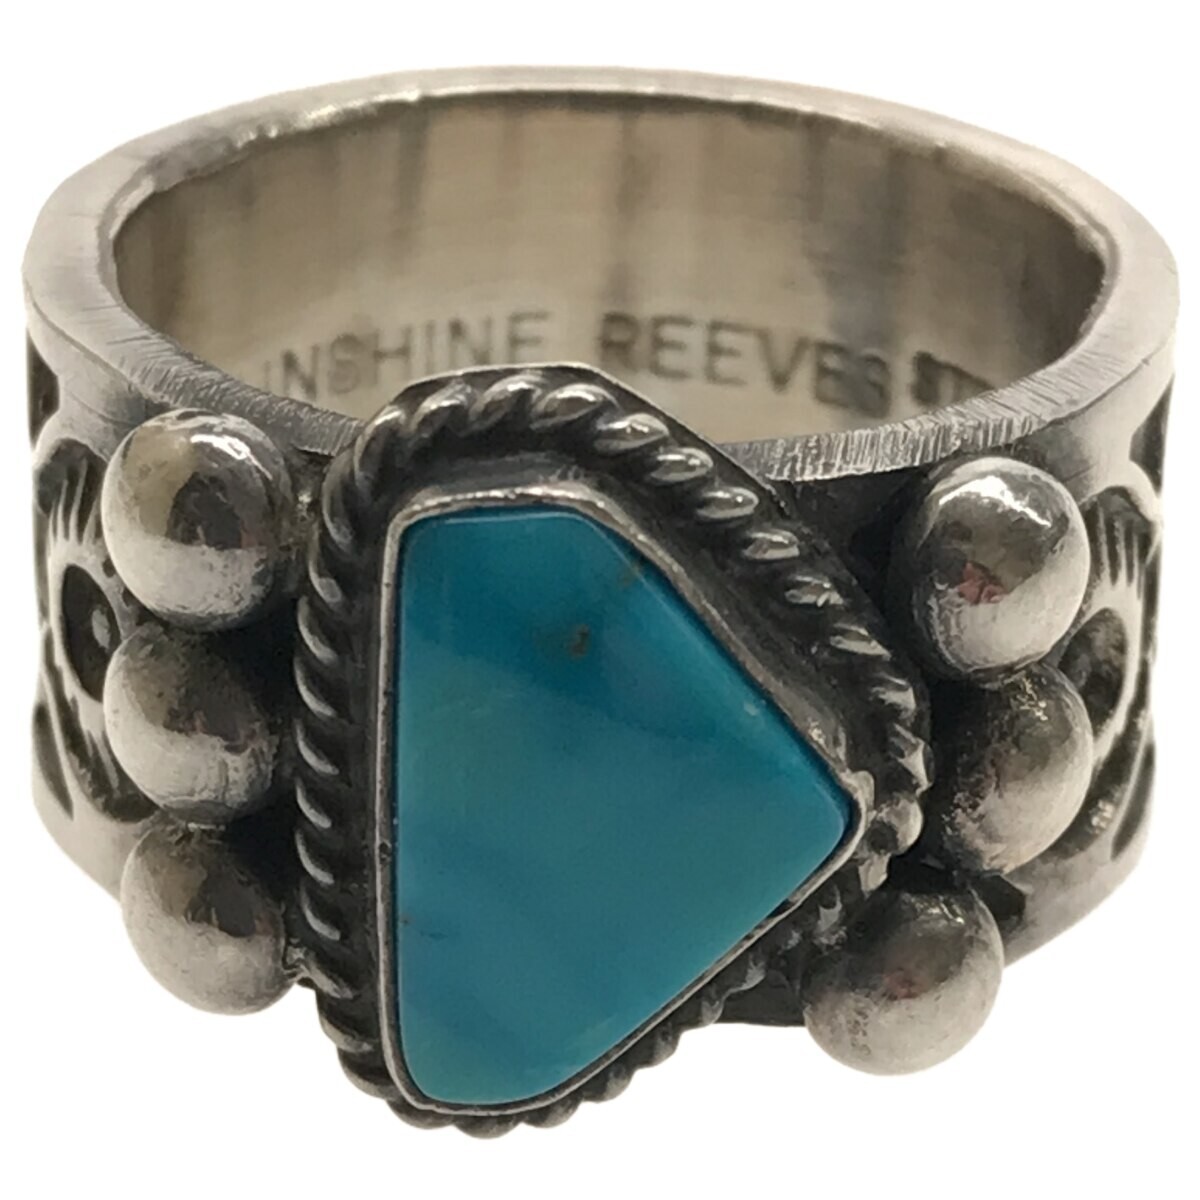 [ sunshine Lee bs]Sunshin Reeves индеец ювелирные изделия серебряное кольцо бирюзовый 18 номер Navajo группа STERLING печать SILVER A771